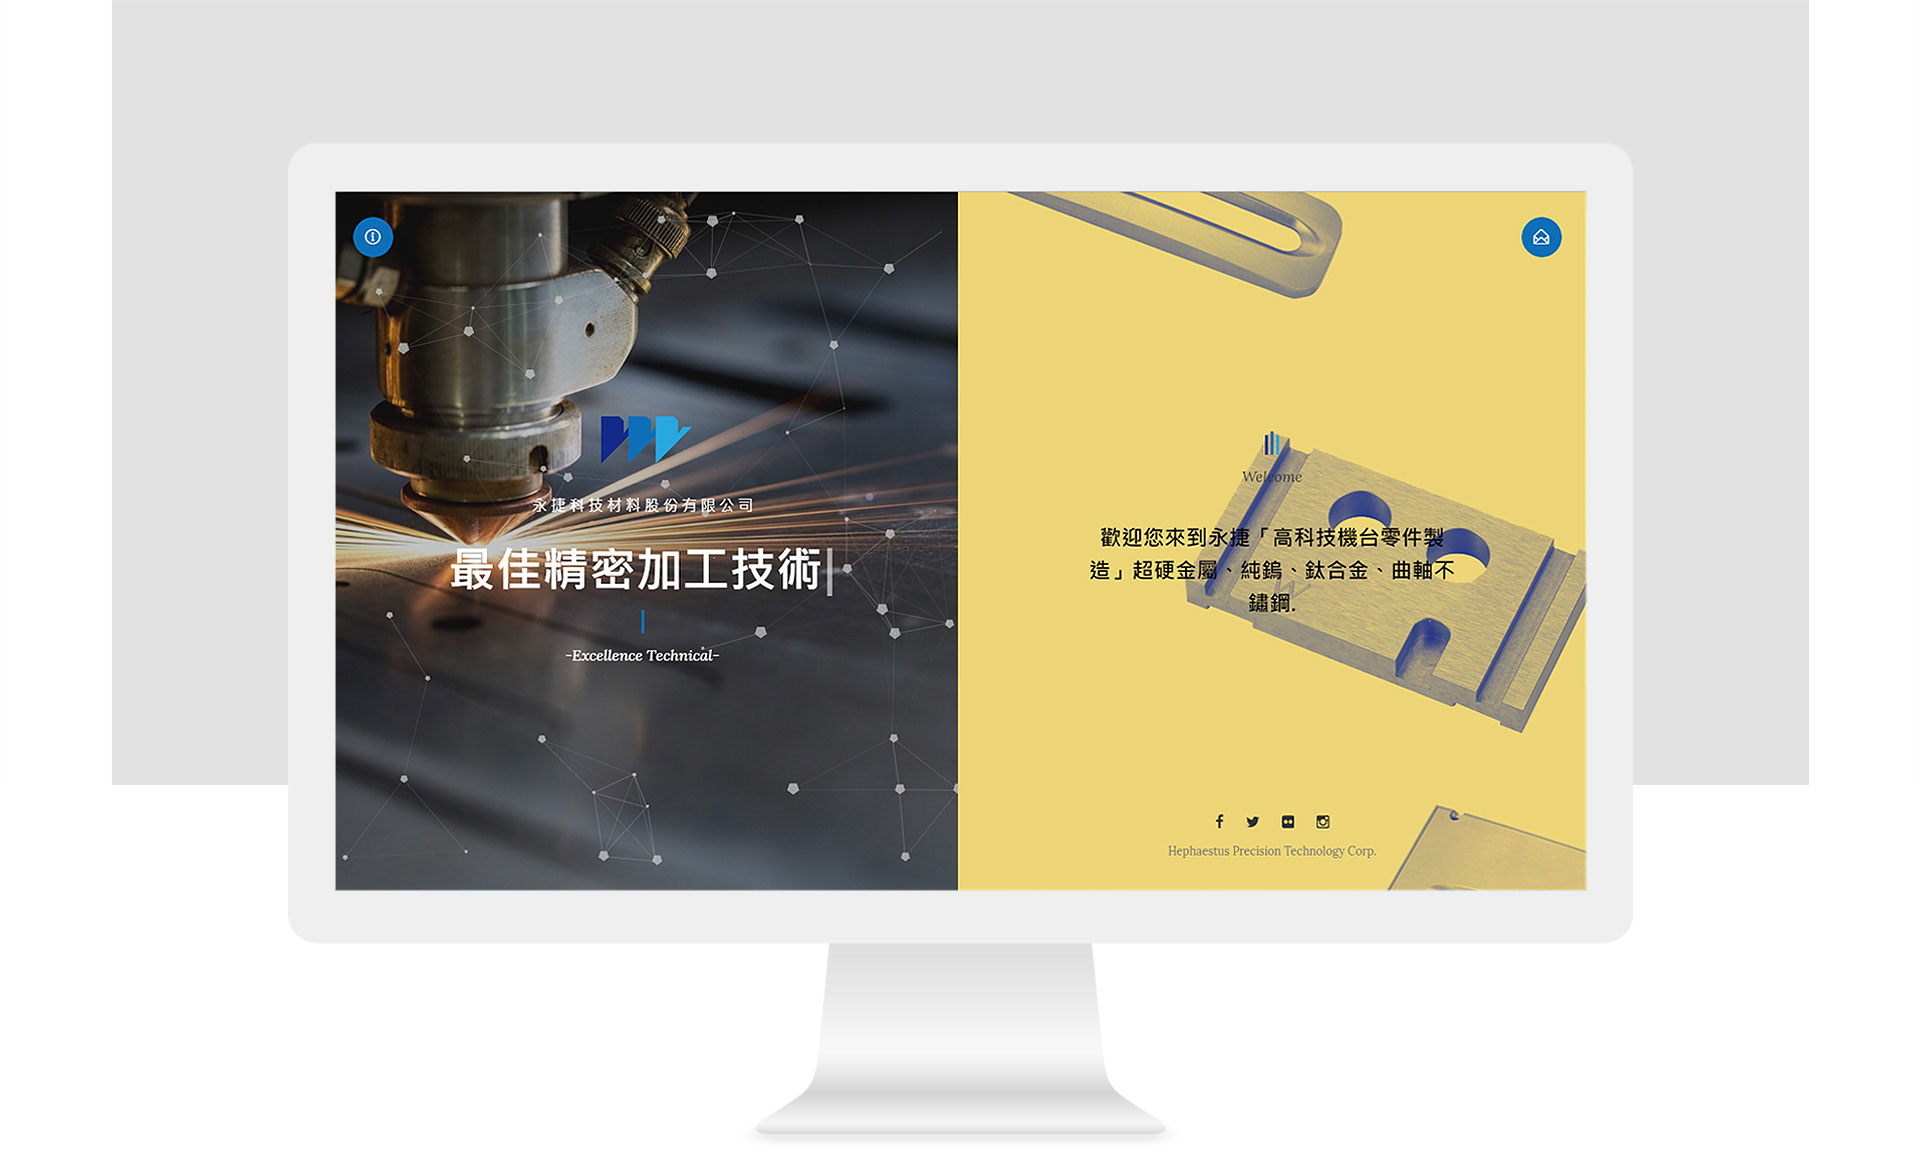 公司網頁設計科技產業工業風格網站視覺設計案例